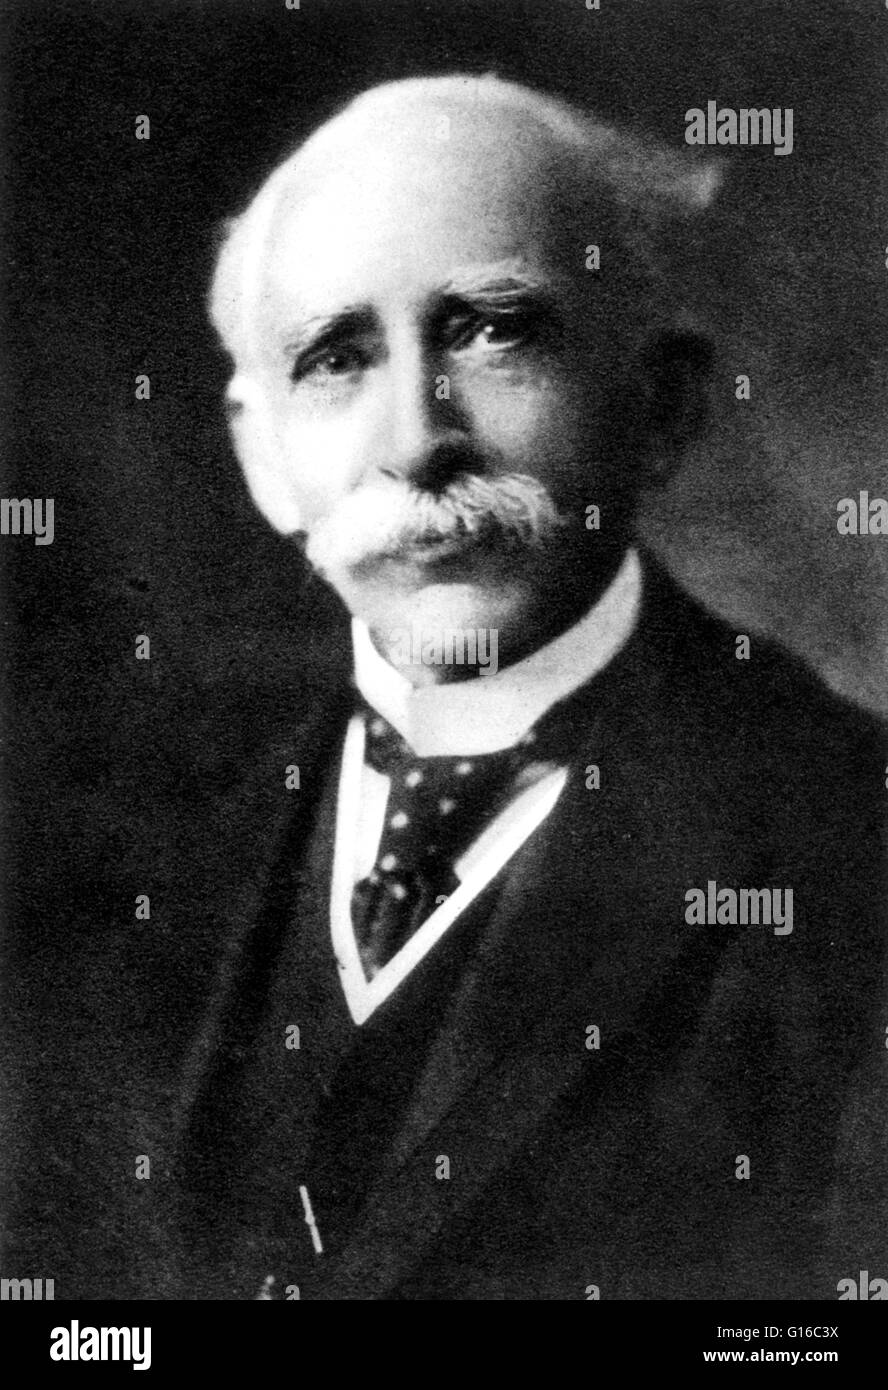 John Ambrose Fleming (el 29 de noviembre de 1849 - 18 de abril de 1945) fue  un ingeniero eléctrico y físico inglés. En 1904, inventó los dos electrodos  de tubo de vacío